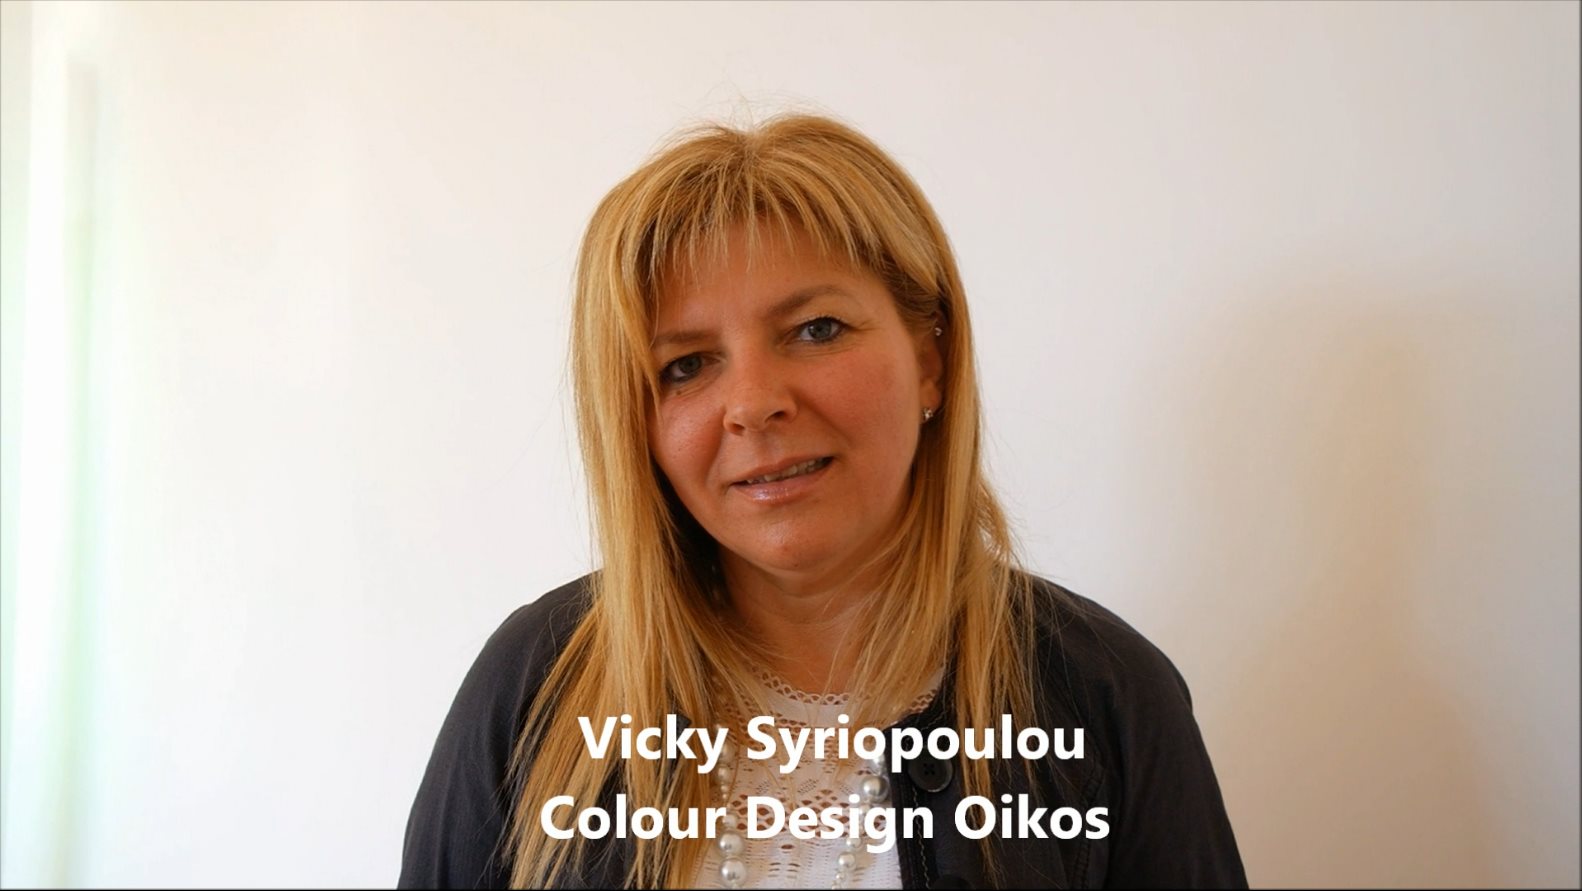 Fuorisalone 2016 Milano: intervista a Vicky Syriopoulou, Colour Design Oikos